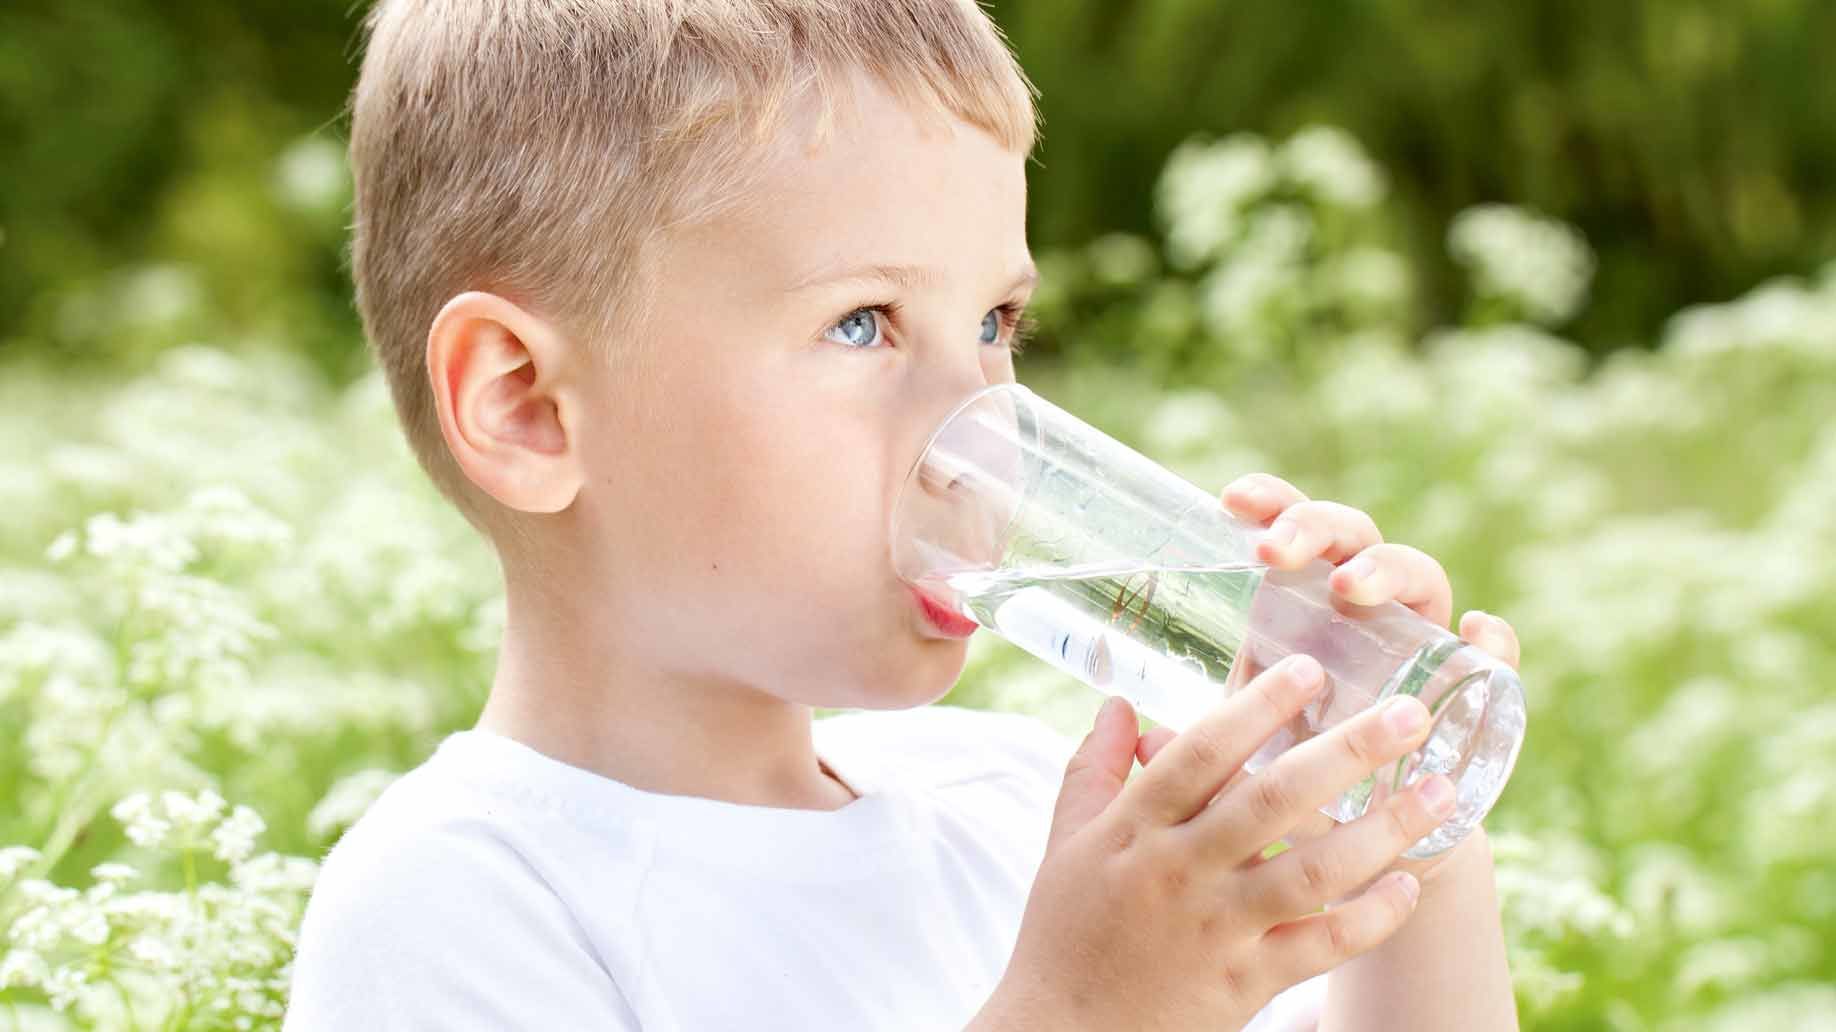 2. Membiasakan anak minum air putih setelah minum susu